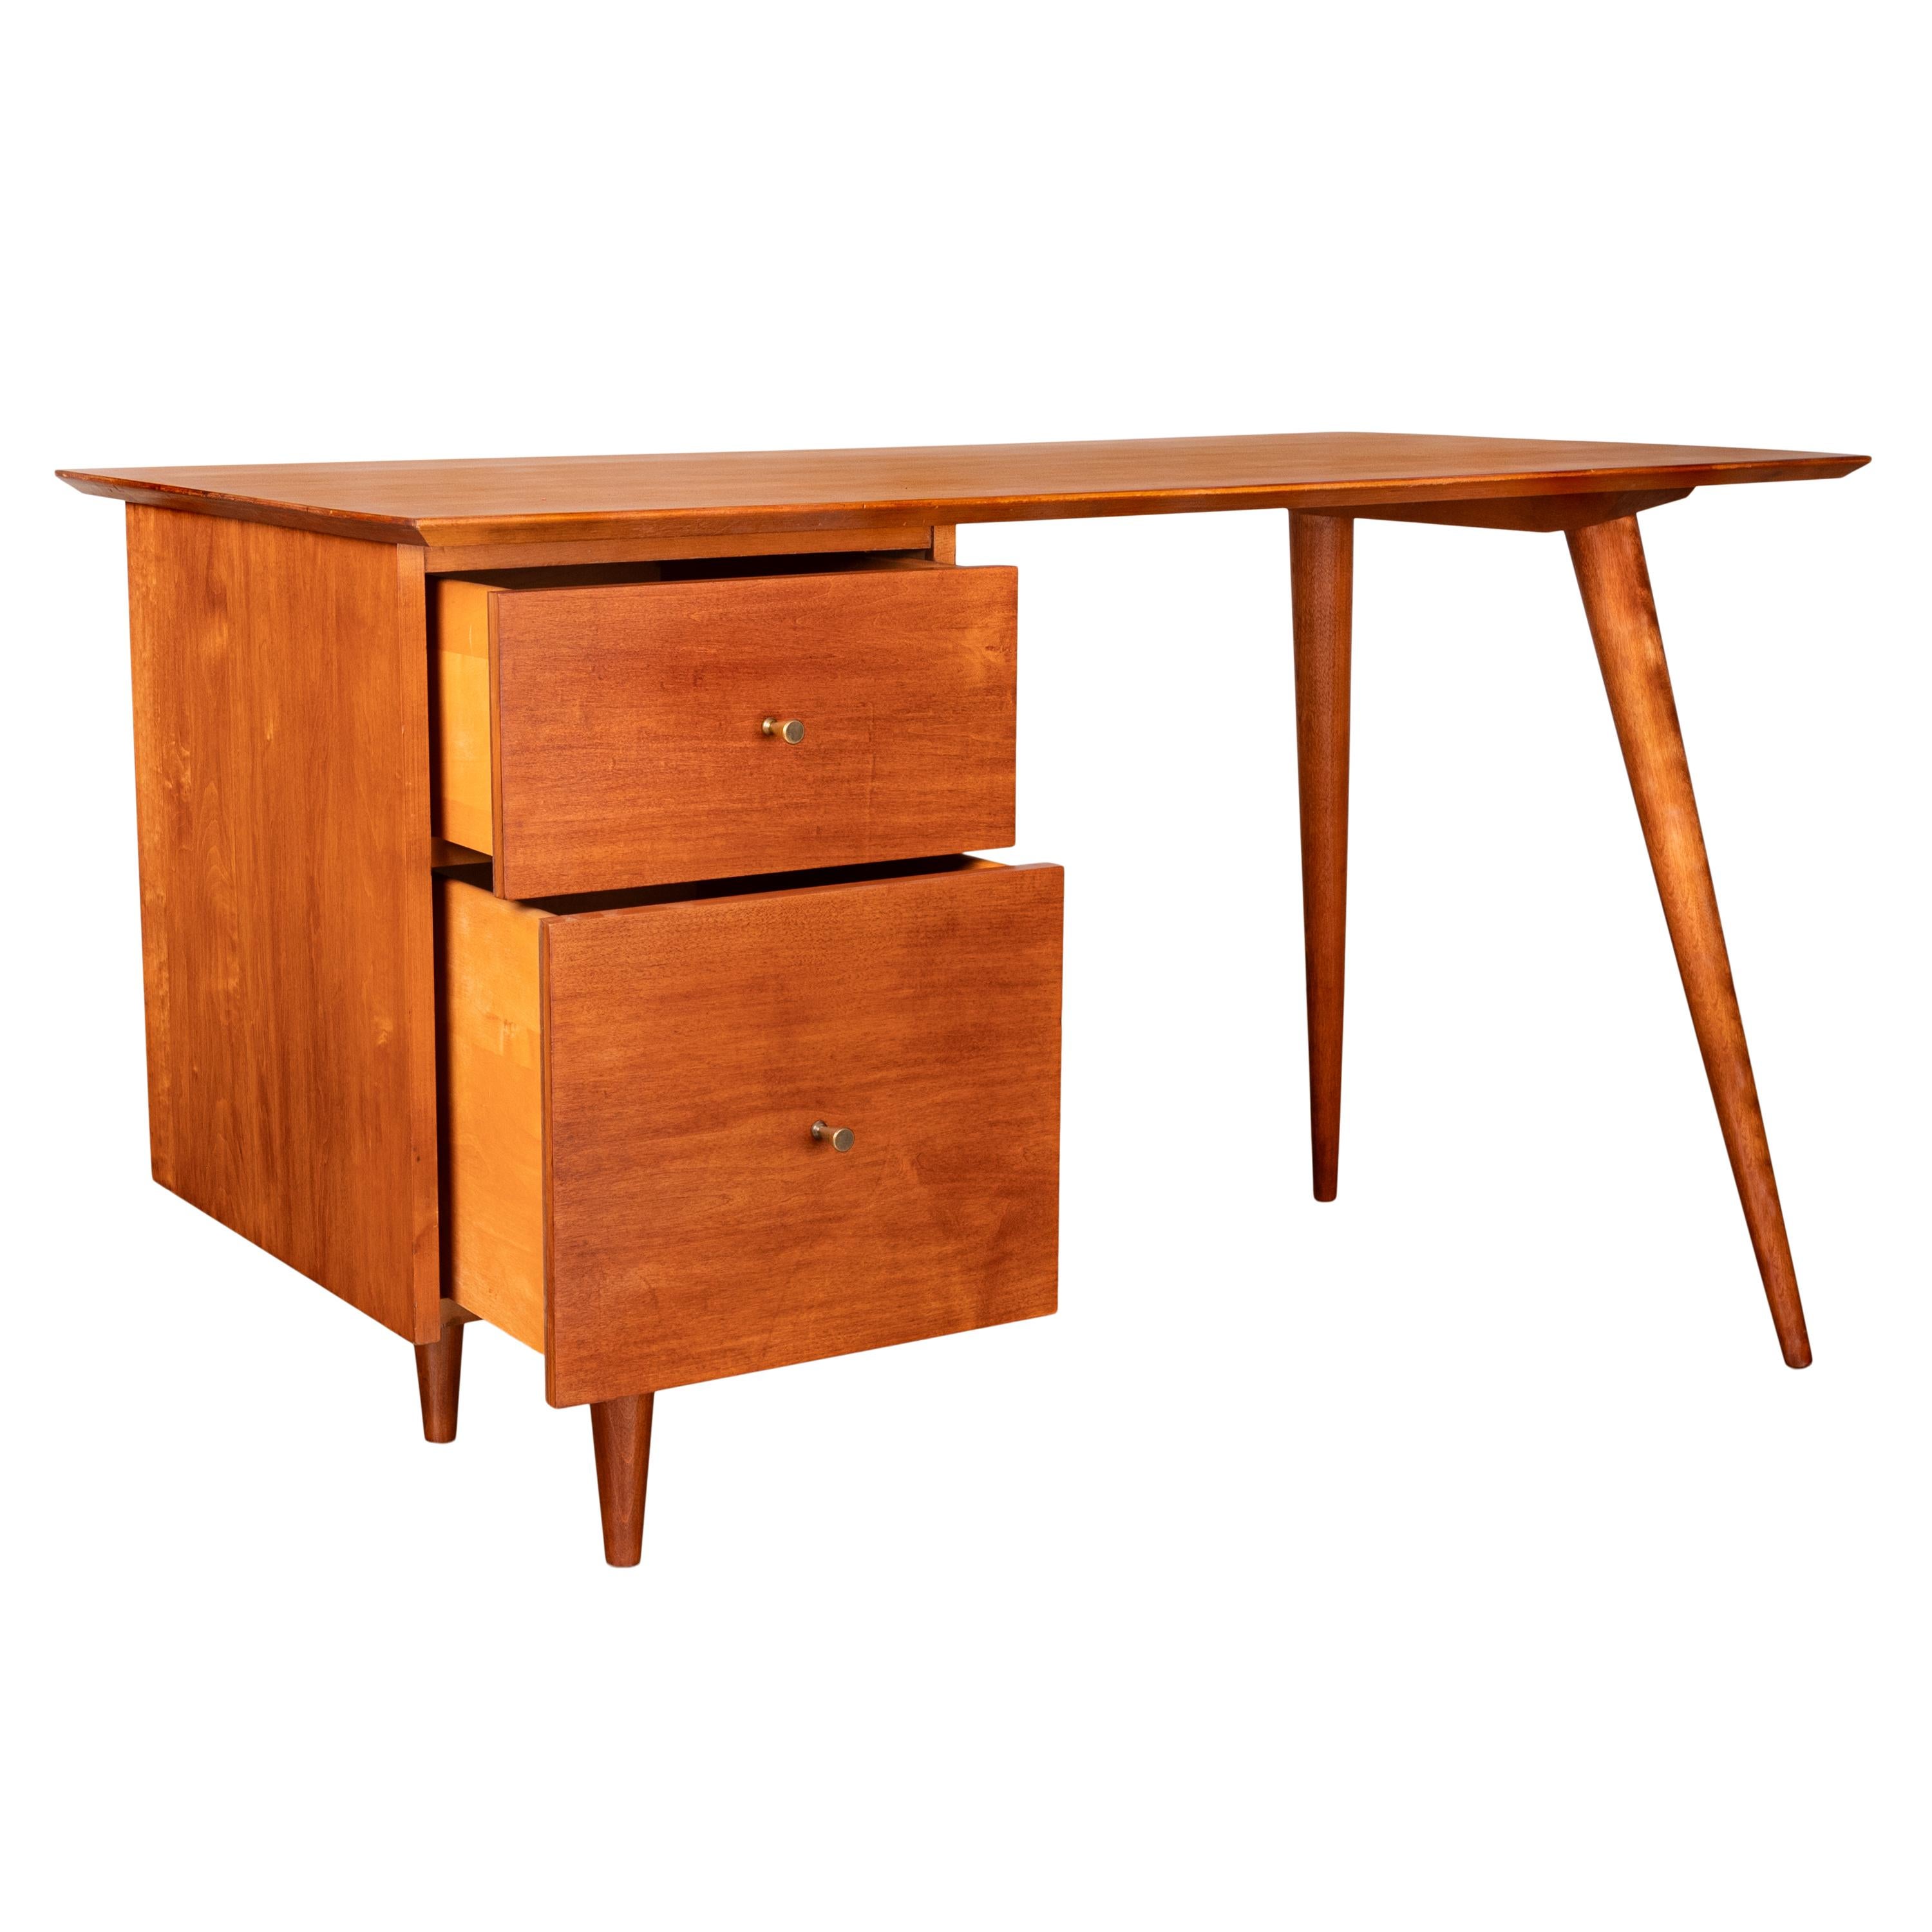 American Mid Century Modern Paul McCobb Planner Group Maple # 1560 Desk 1950's For Sale 2